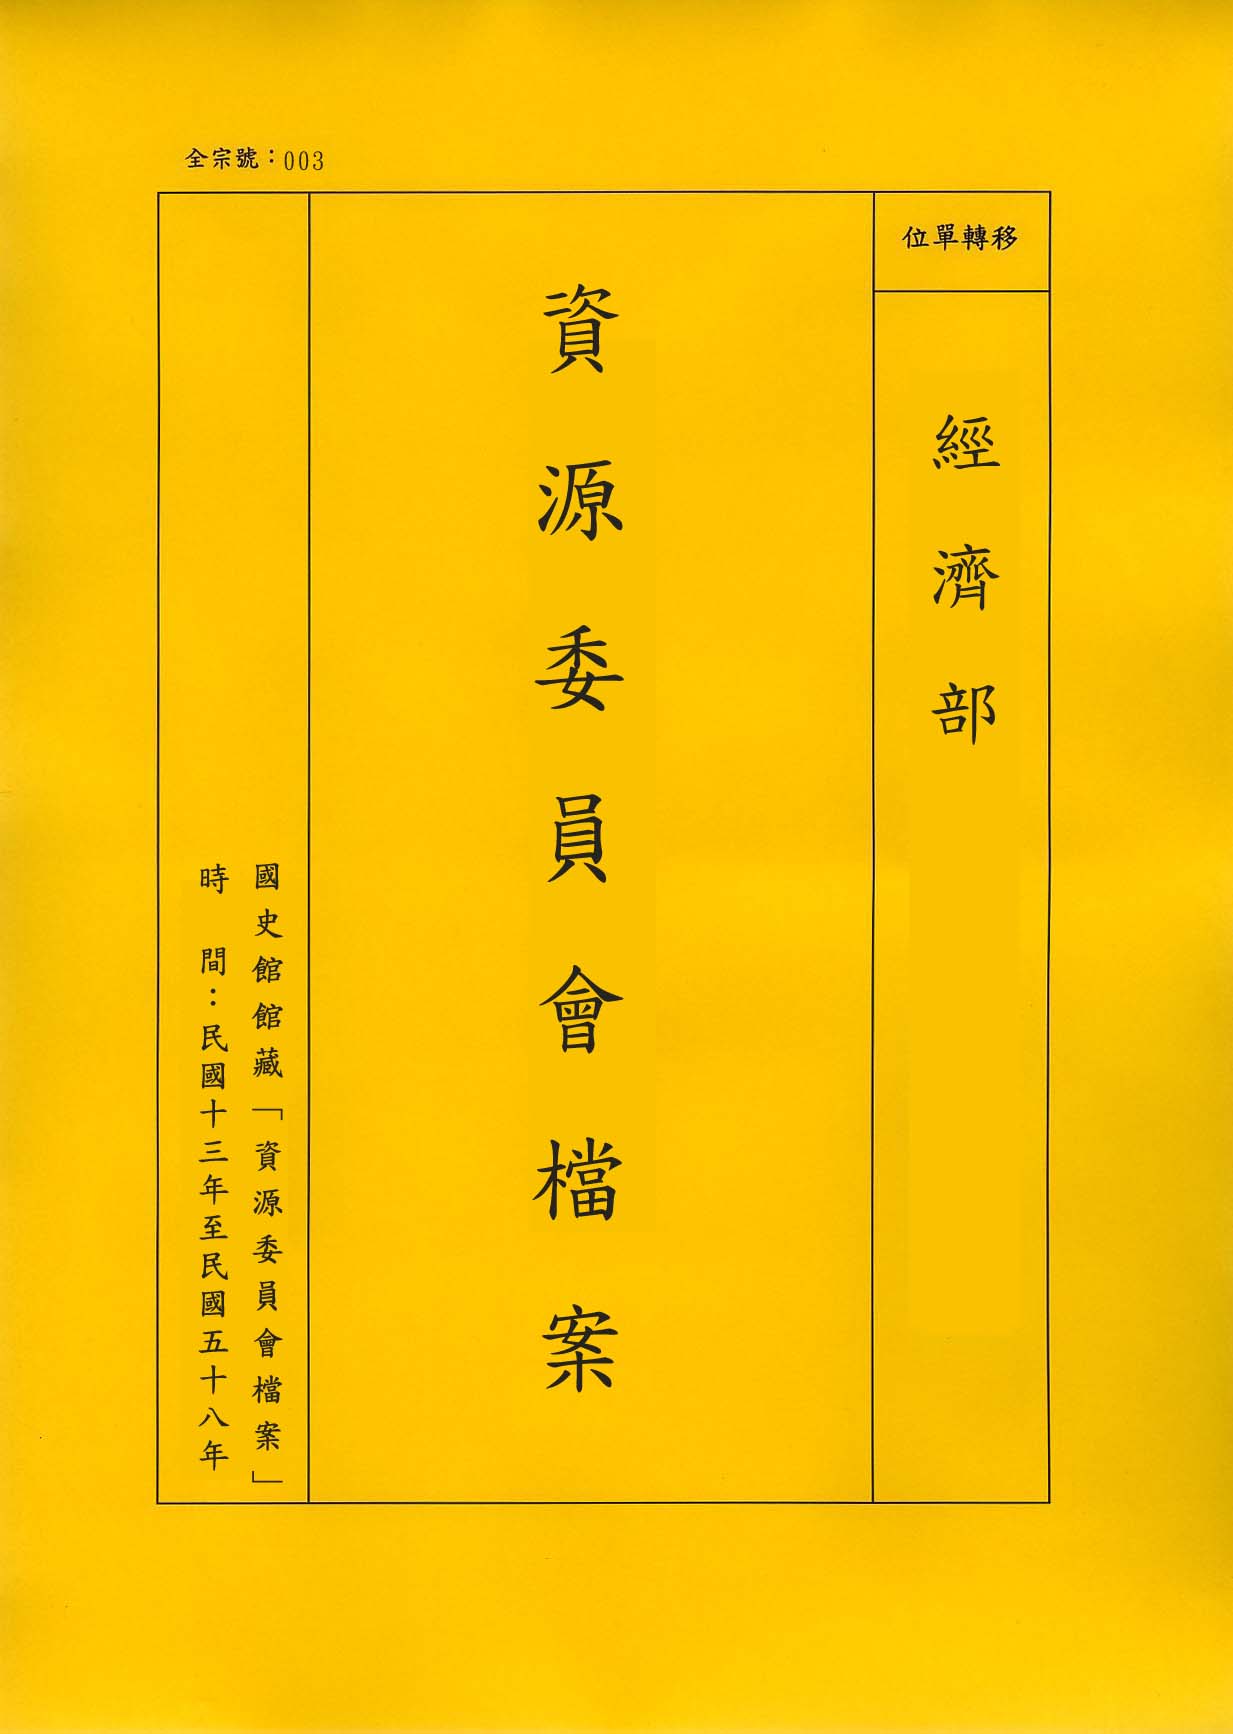 卷名:紡織類工廠登記卡片─陝西(一)(003-010304-0197)